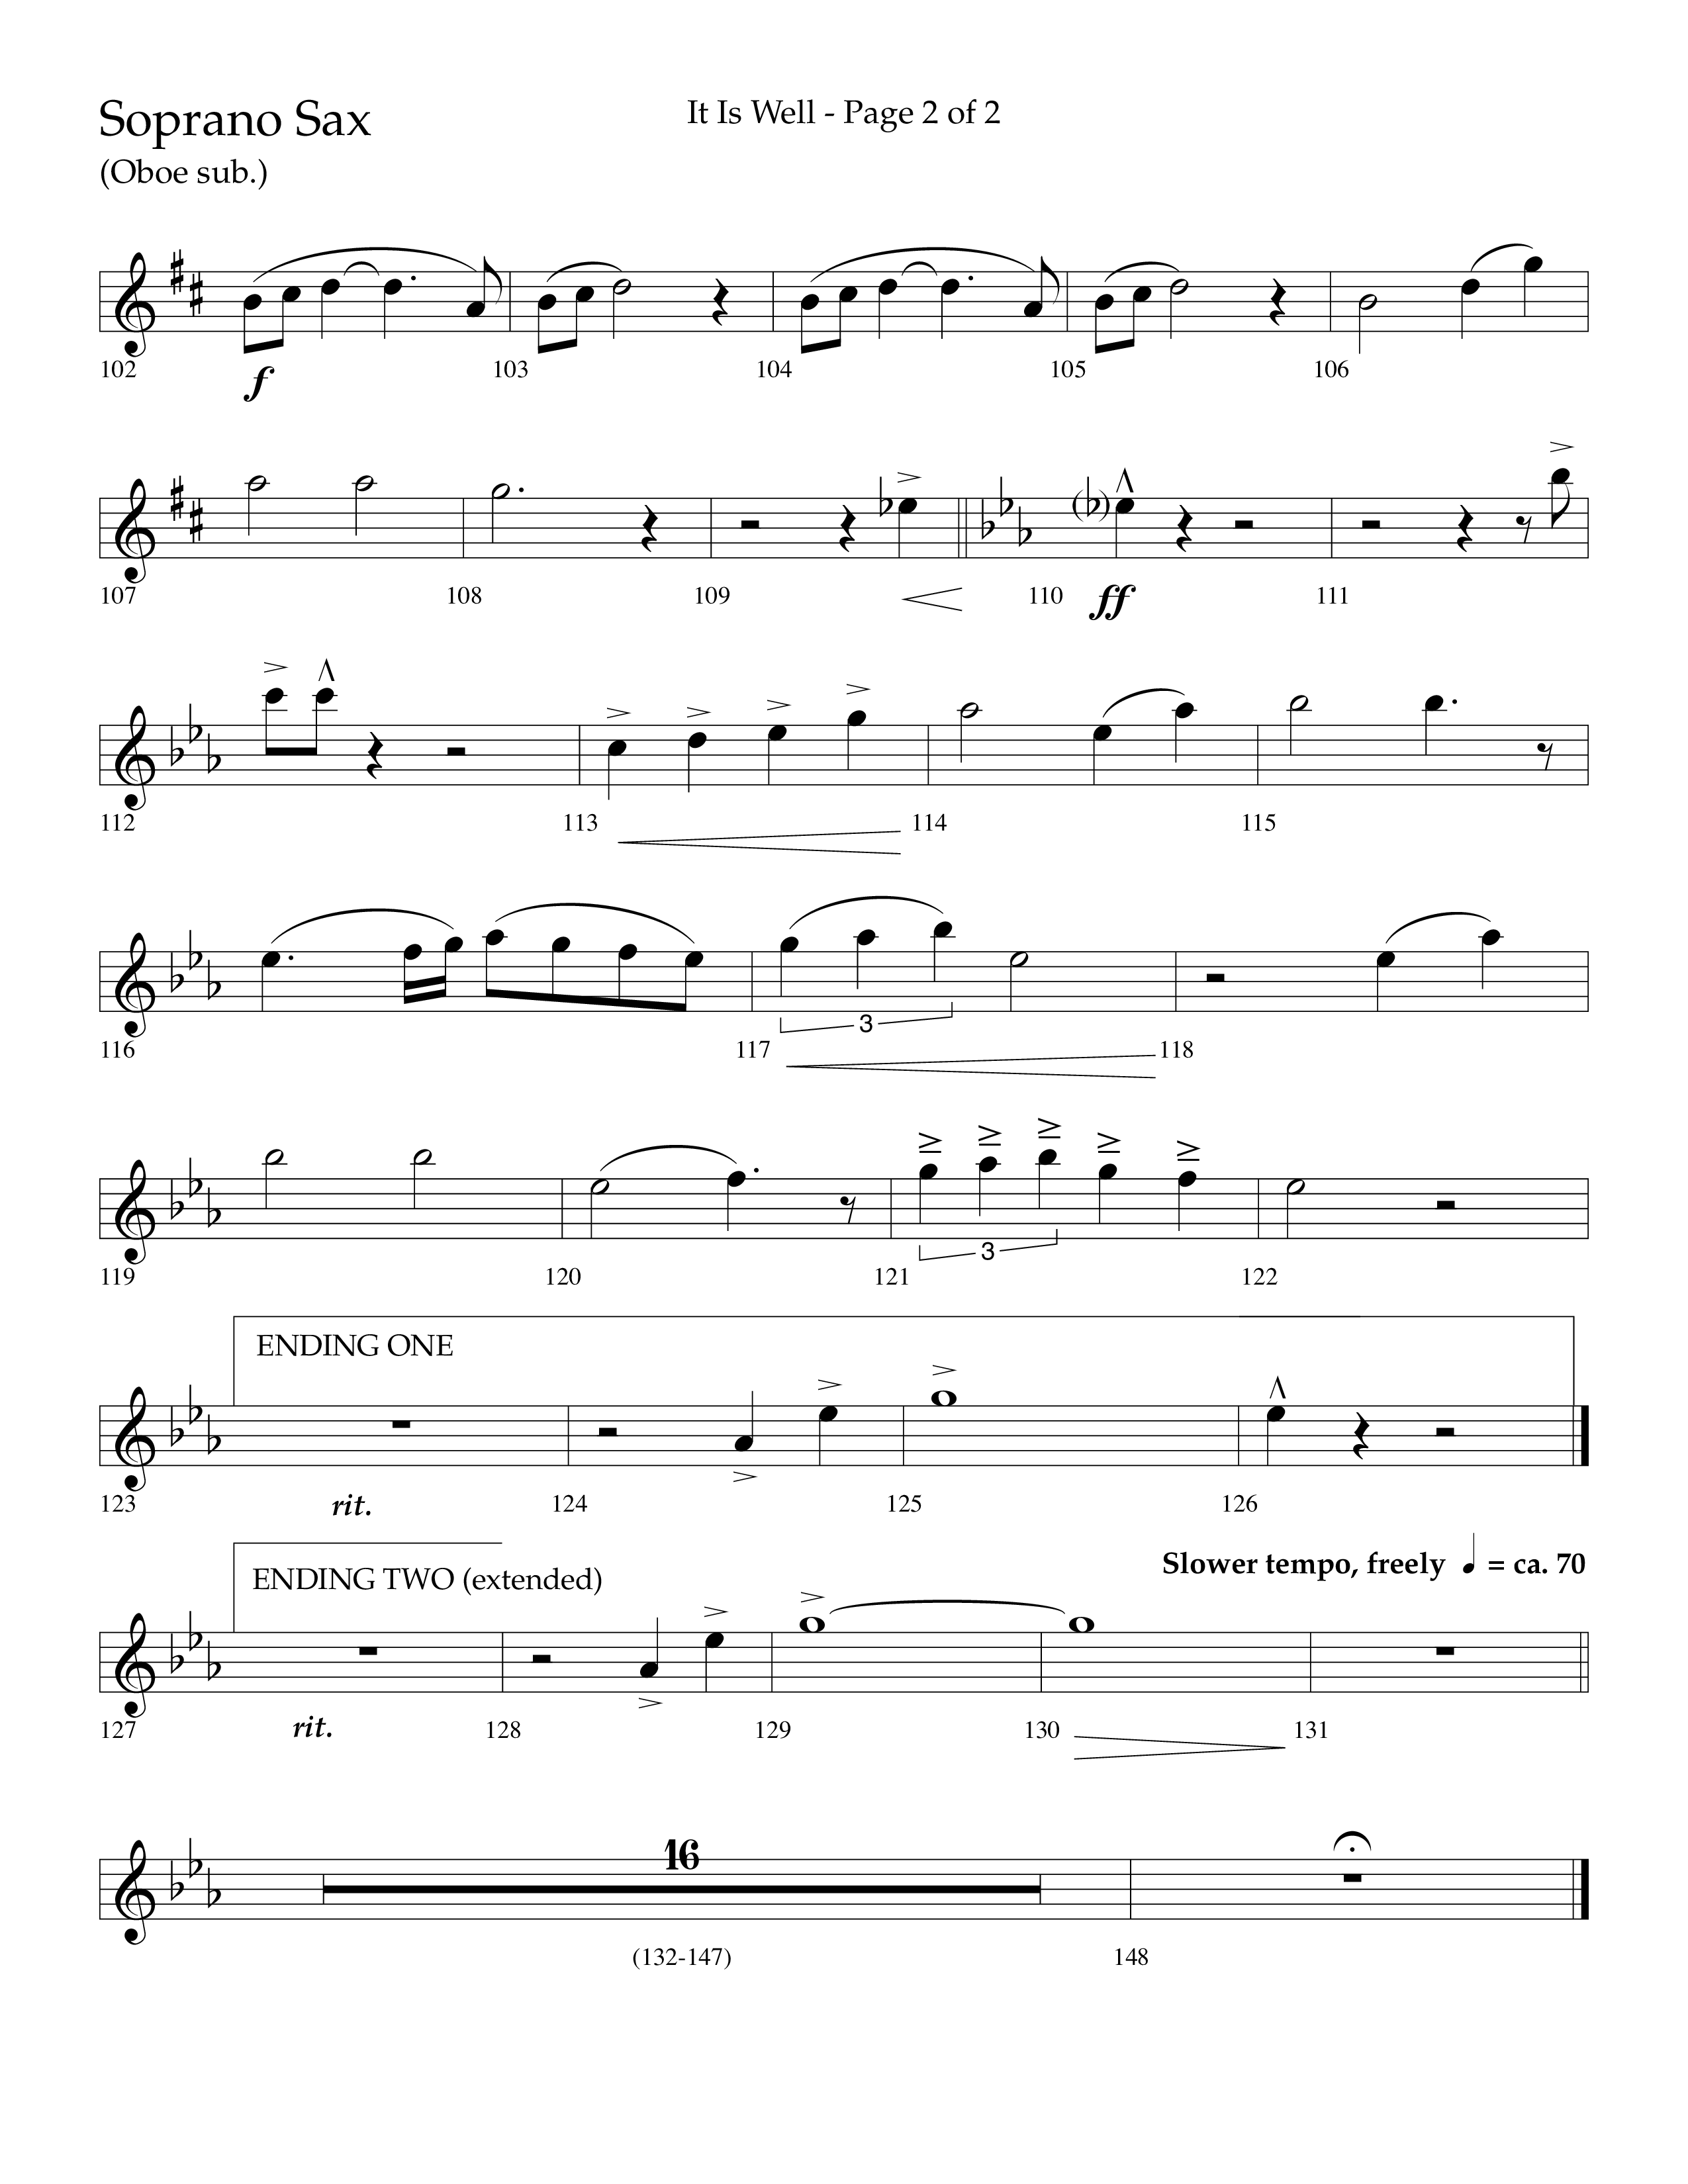 It Is Well (Choral Anthem SATB) Soprano Sax (Lifeway Choral / Arr. Cliff Duren)